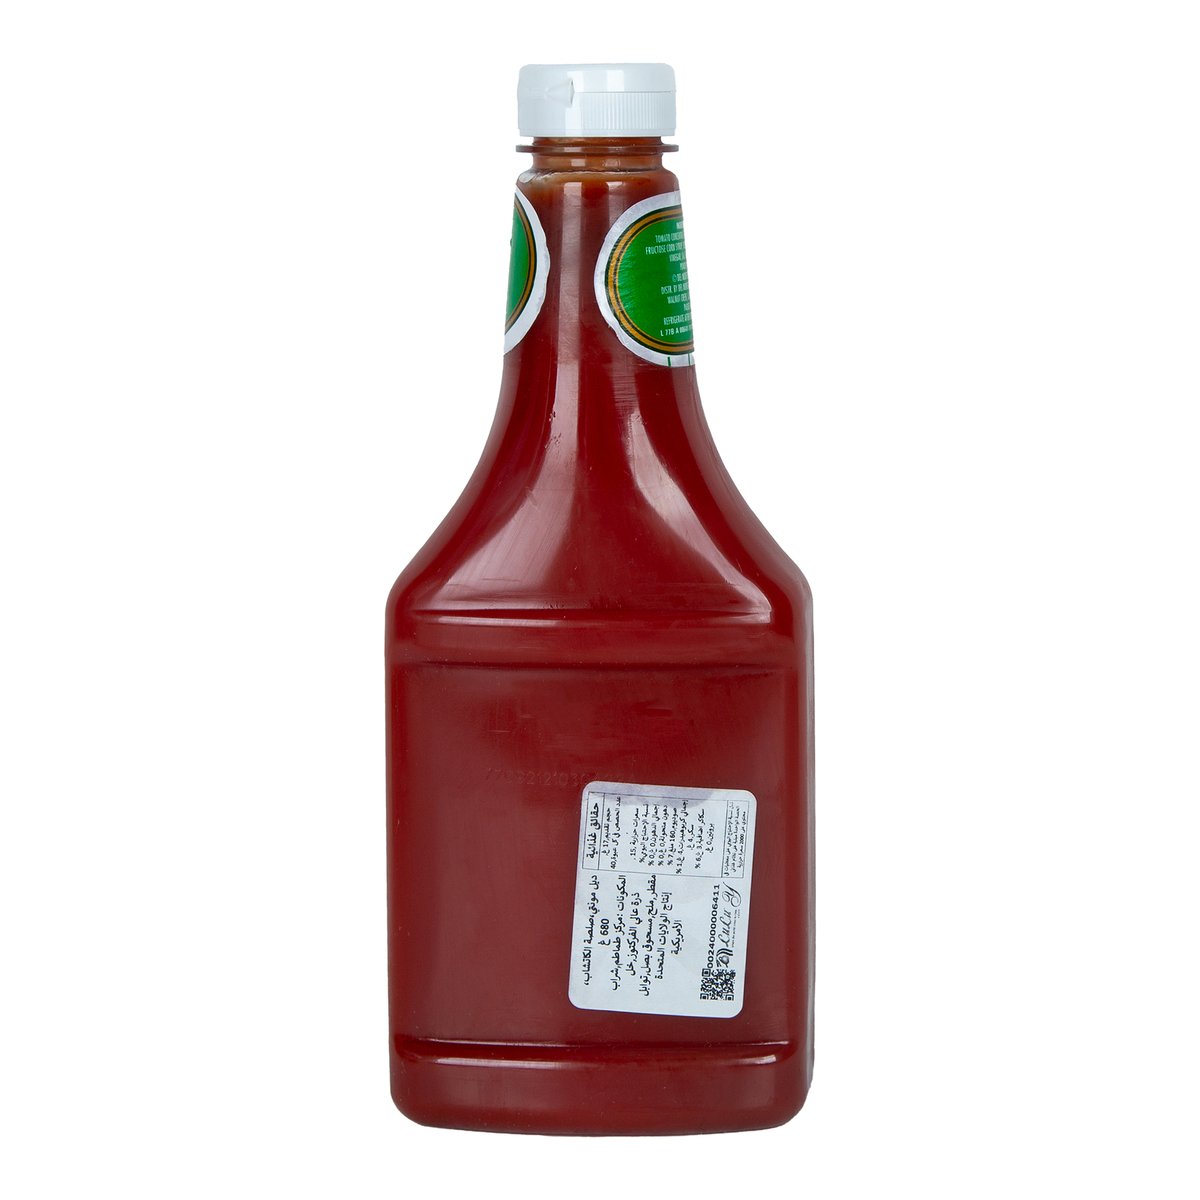 Del Monte Tomato Ketchup 680 g